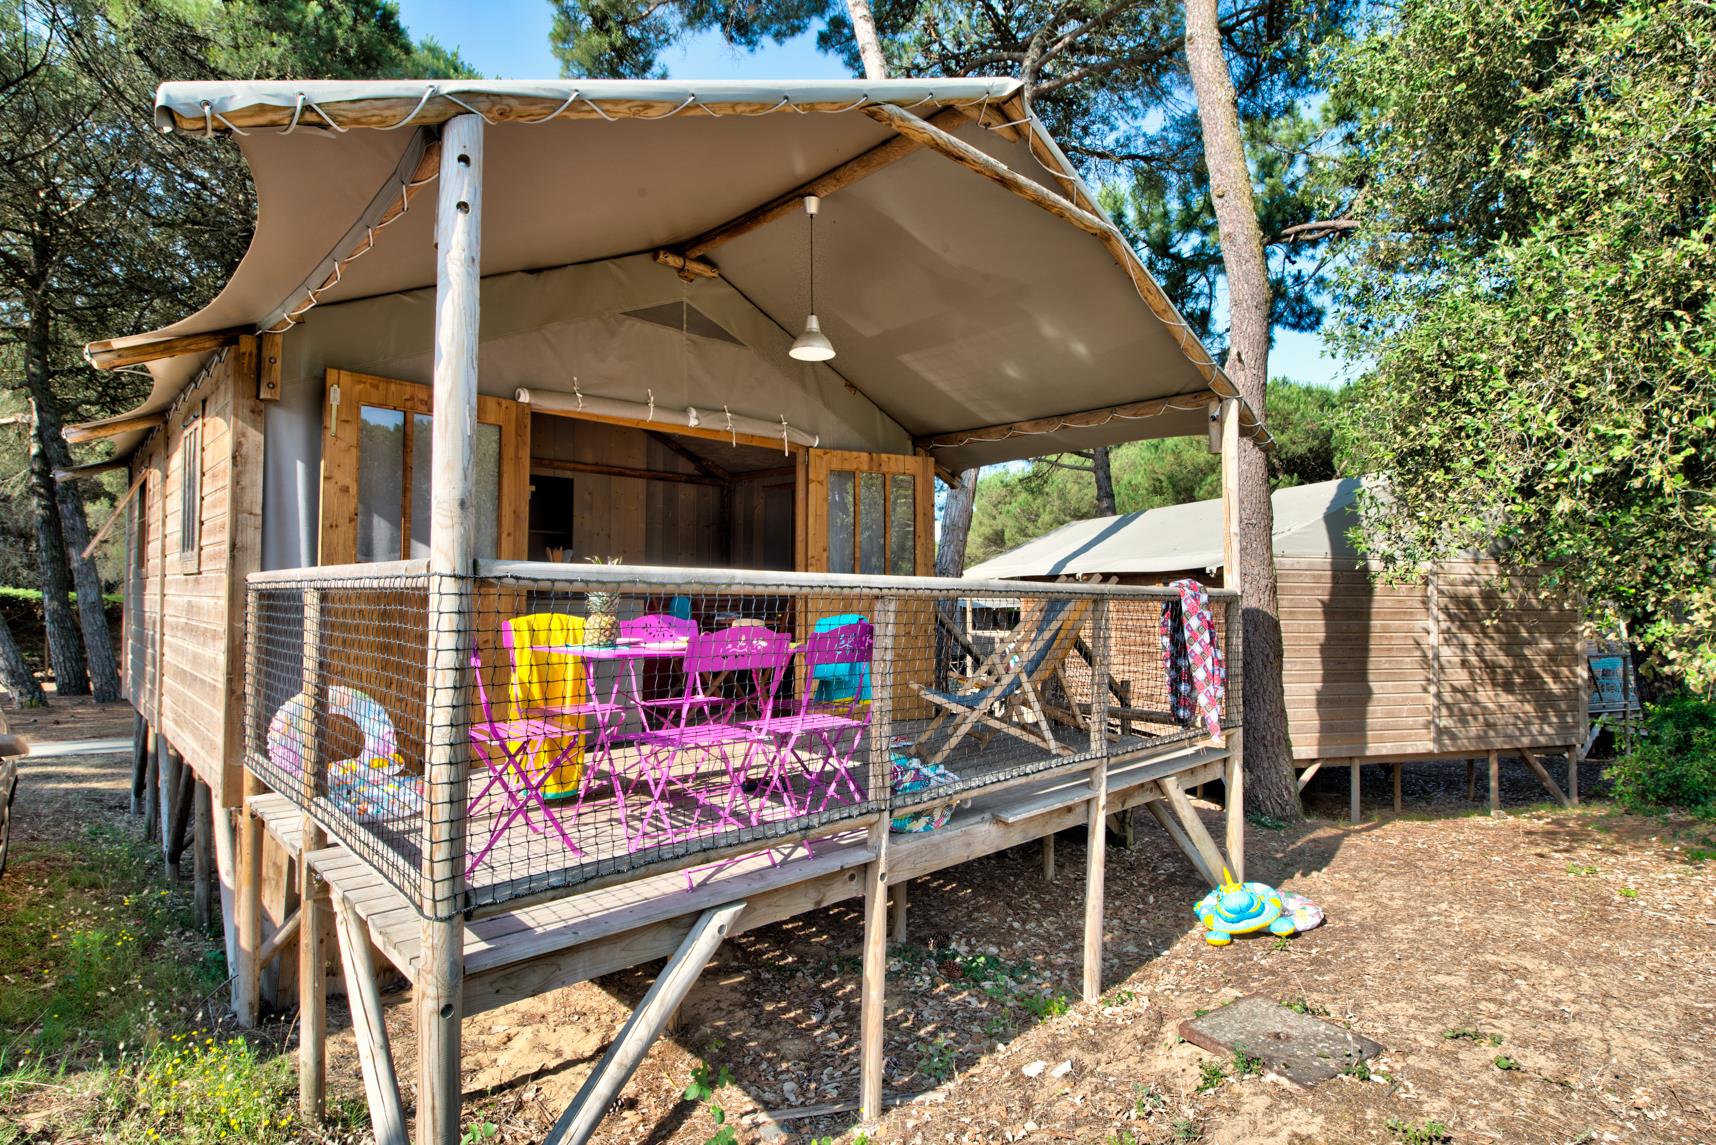 Cabane Lodge Bois Confort sur pilotis 38m² – 2 chambres – terrasse couverte de 8m² + TV